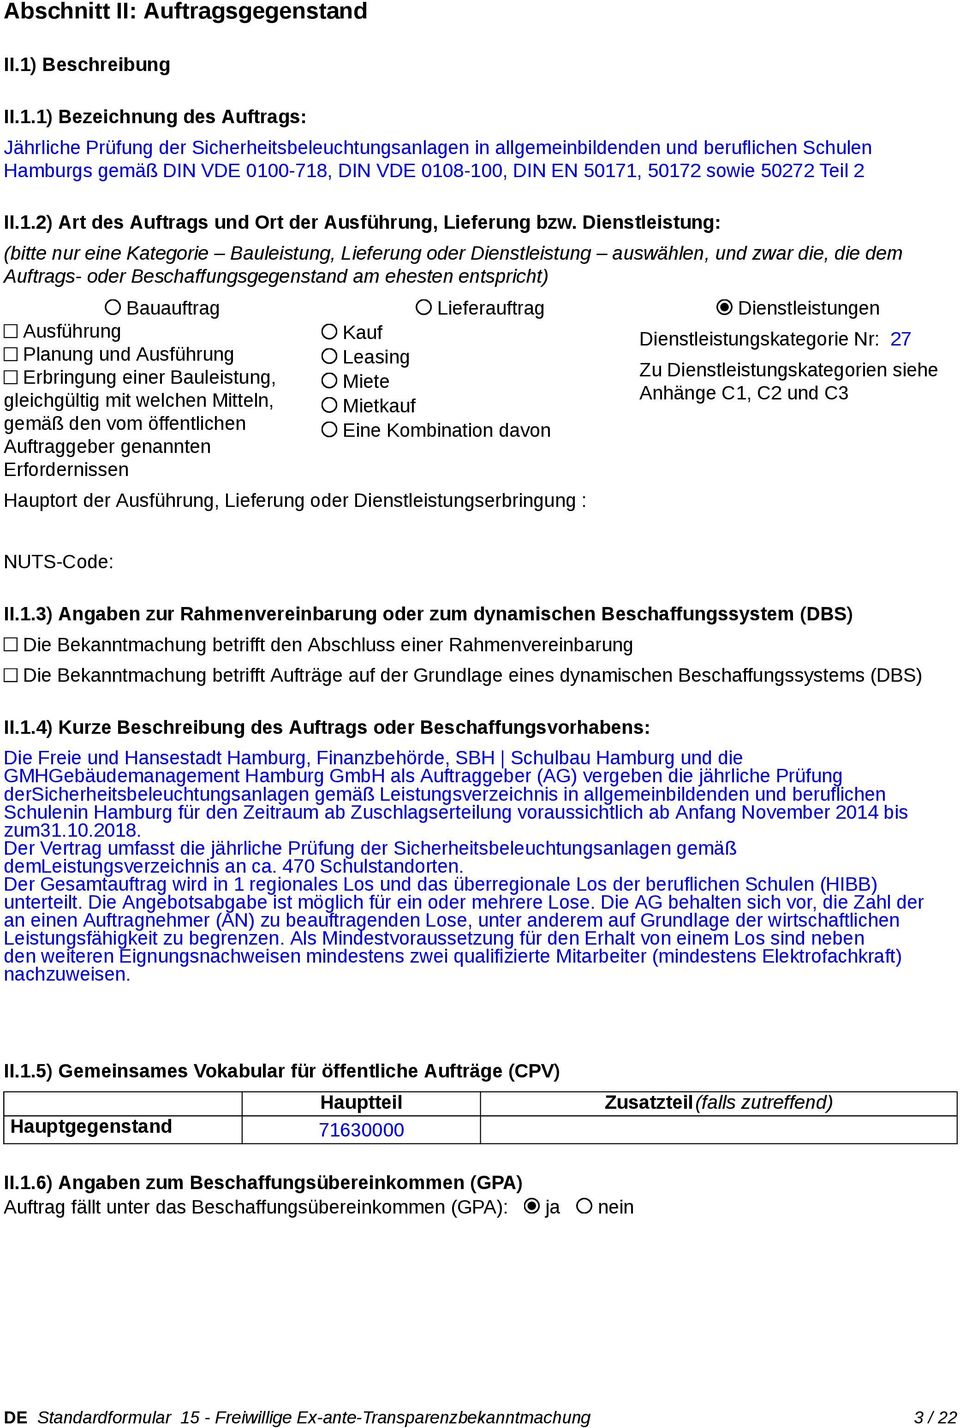 1) Bezeichnung des Auftrags: Jährliche Prüfung der Sicherheitsbeleuchtungsanlagen in allgemeinbildenden und beruflichen Schulen Hamburgs gemäß DIN VDE 0100-718, DIN VDE 0108-100, DIN EN 50171, 50172